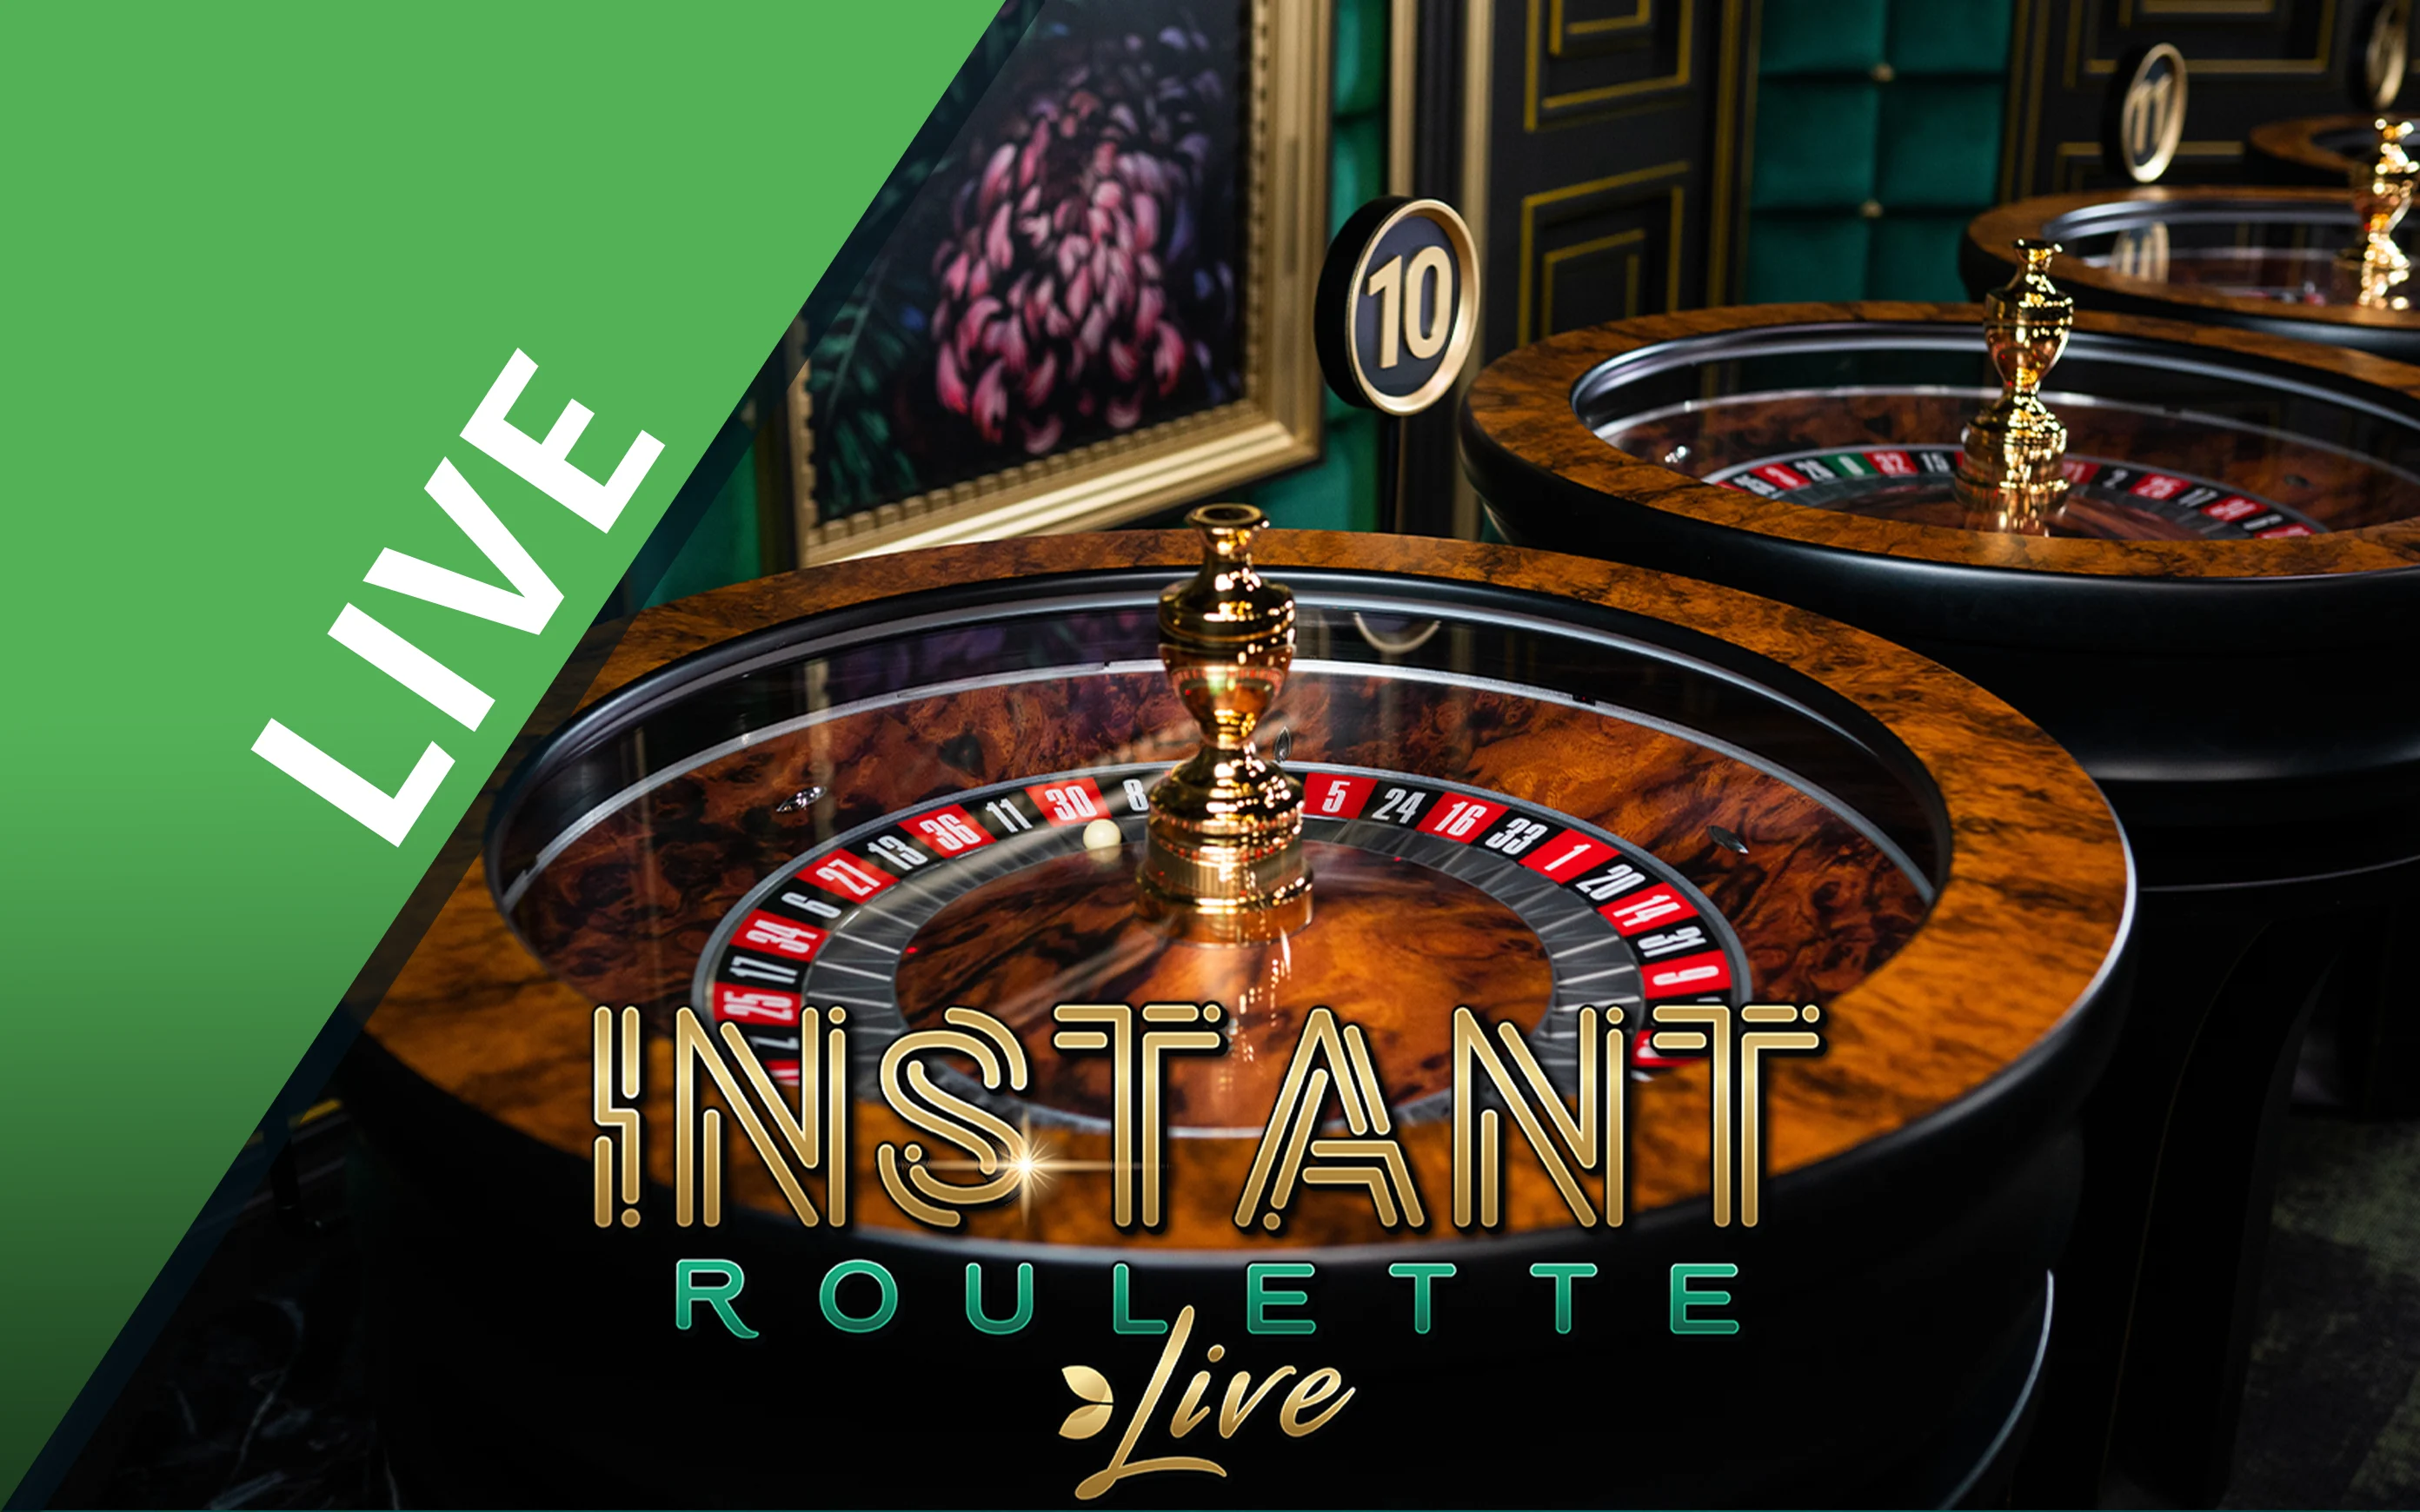 Gioca a Instant Roulette sul casino online Starcasino.be